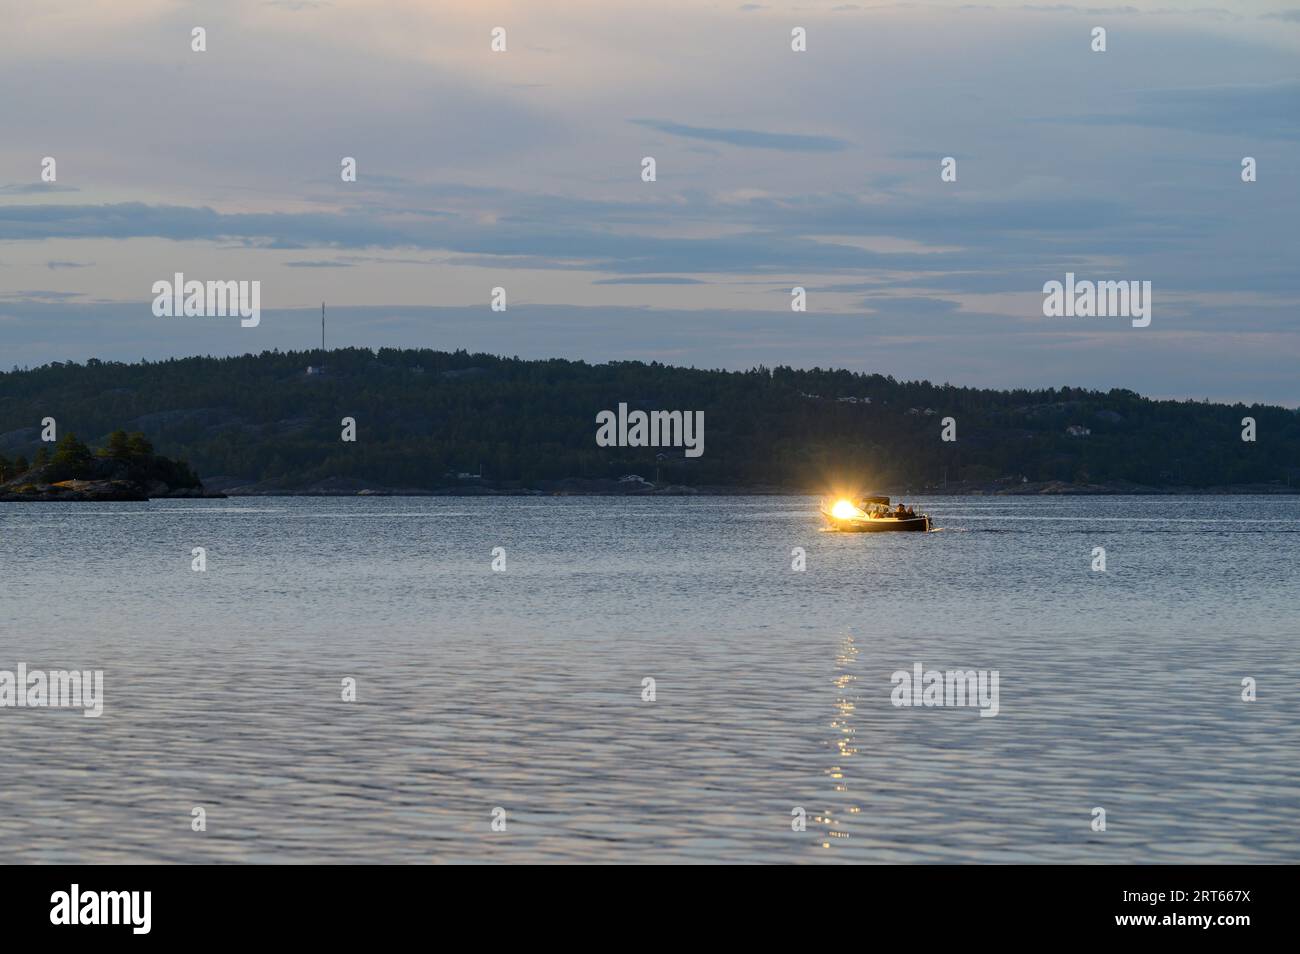 Die Abendsonne spiegelt sich in der Windschutzscheibe eines traditionellen Freizeitbootes wider, das über das Meer segelt, mit der Insel Fluer im Hintergrund, Telemark, Norwegen. Stockfoto